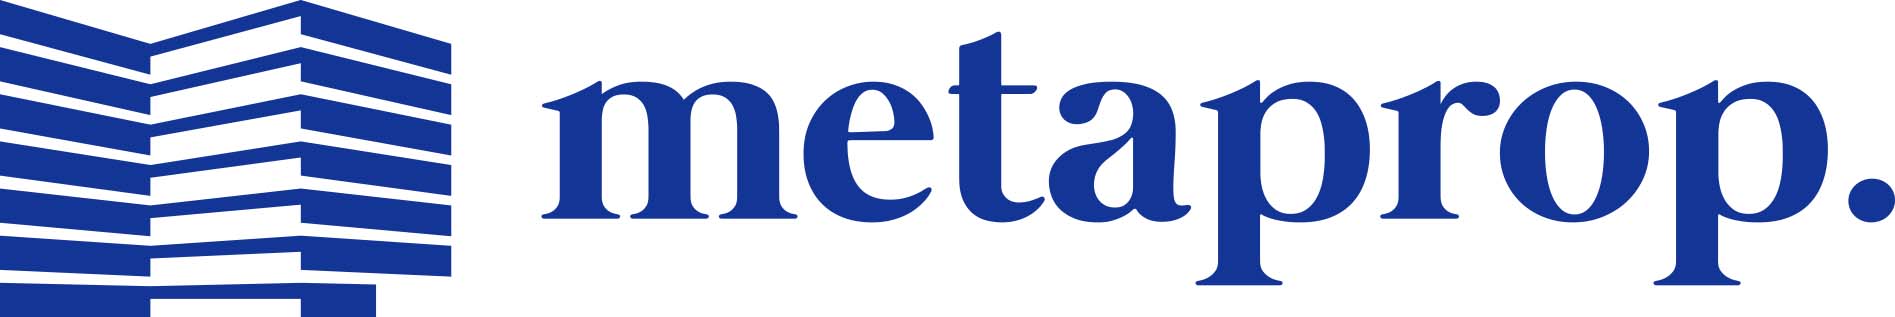 MetaProp logo full color horizontal